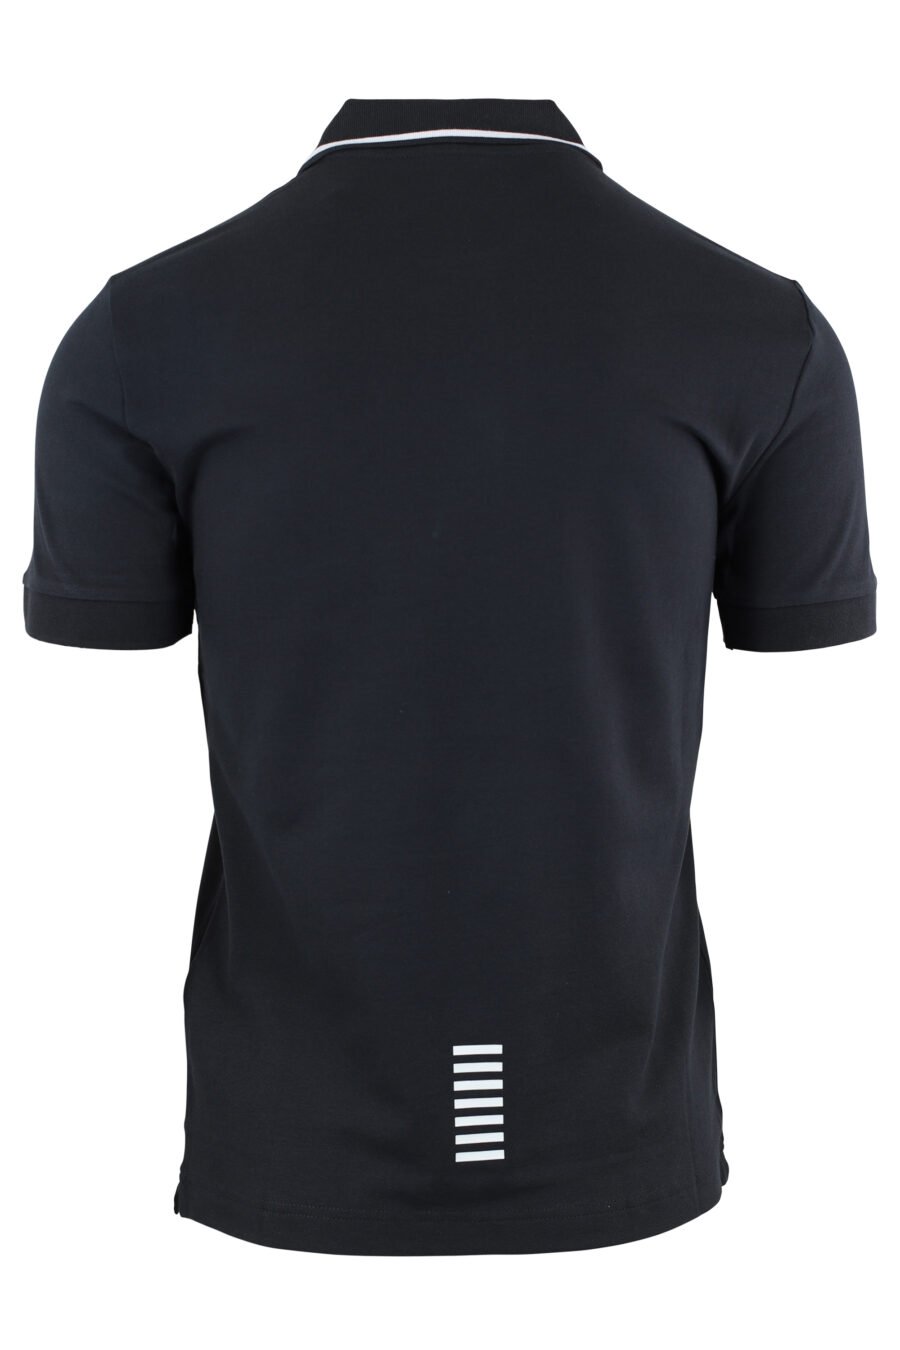 Dunkelblaues Poloshirt mit Mini-Gummilogo und Kragenlinie - IMG 4620